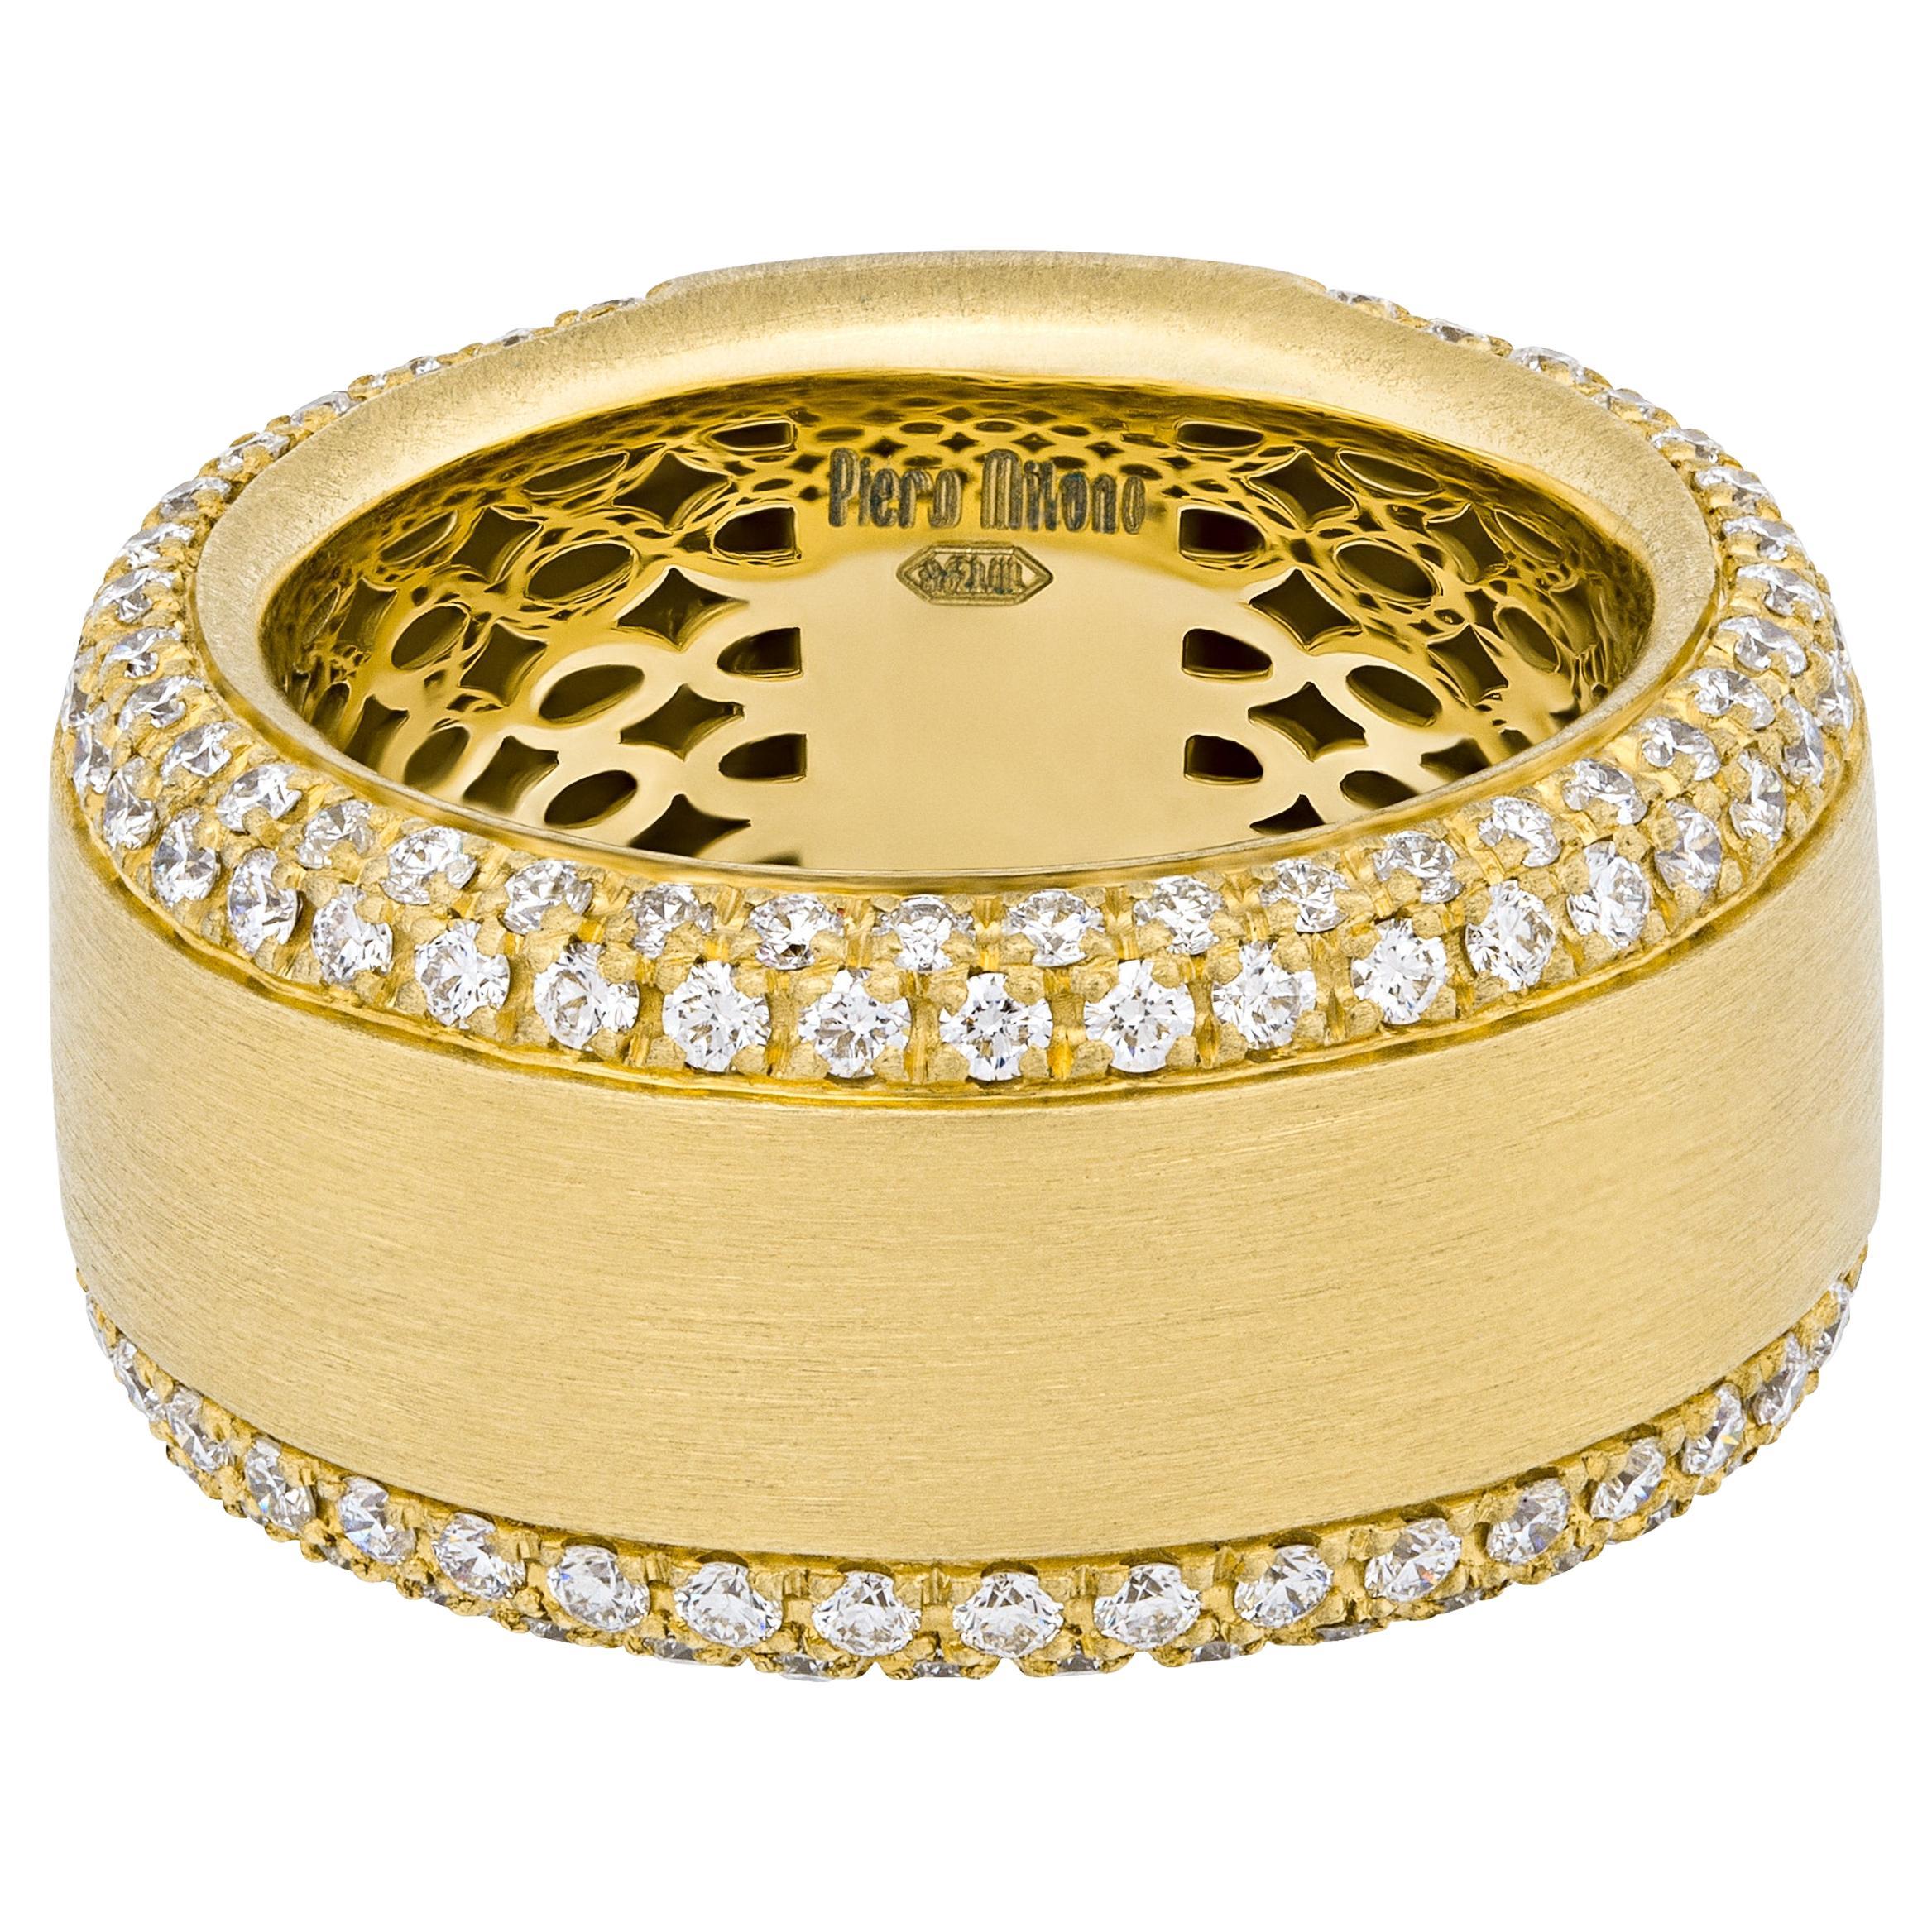 Piero Milano, bague en or jaune 18 carats avec diamants, taille 7